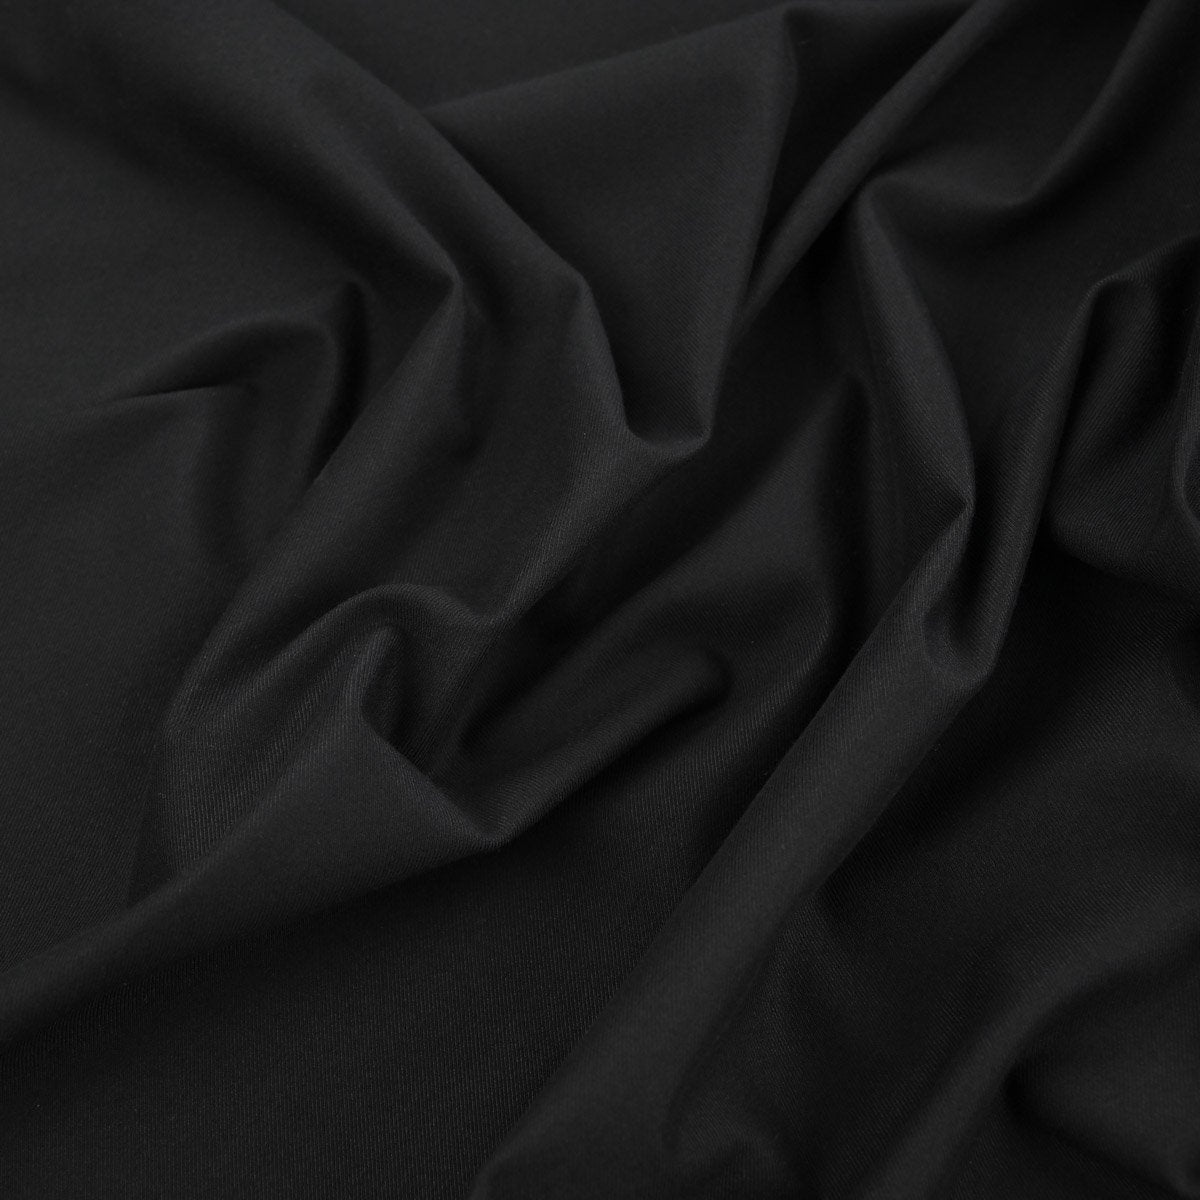 Black Stretchy Twill Fabric 24